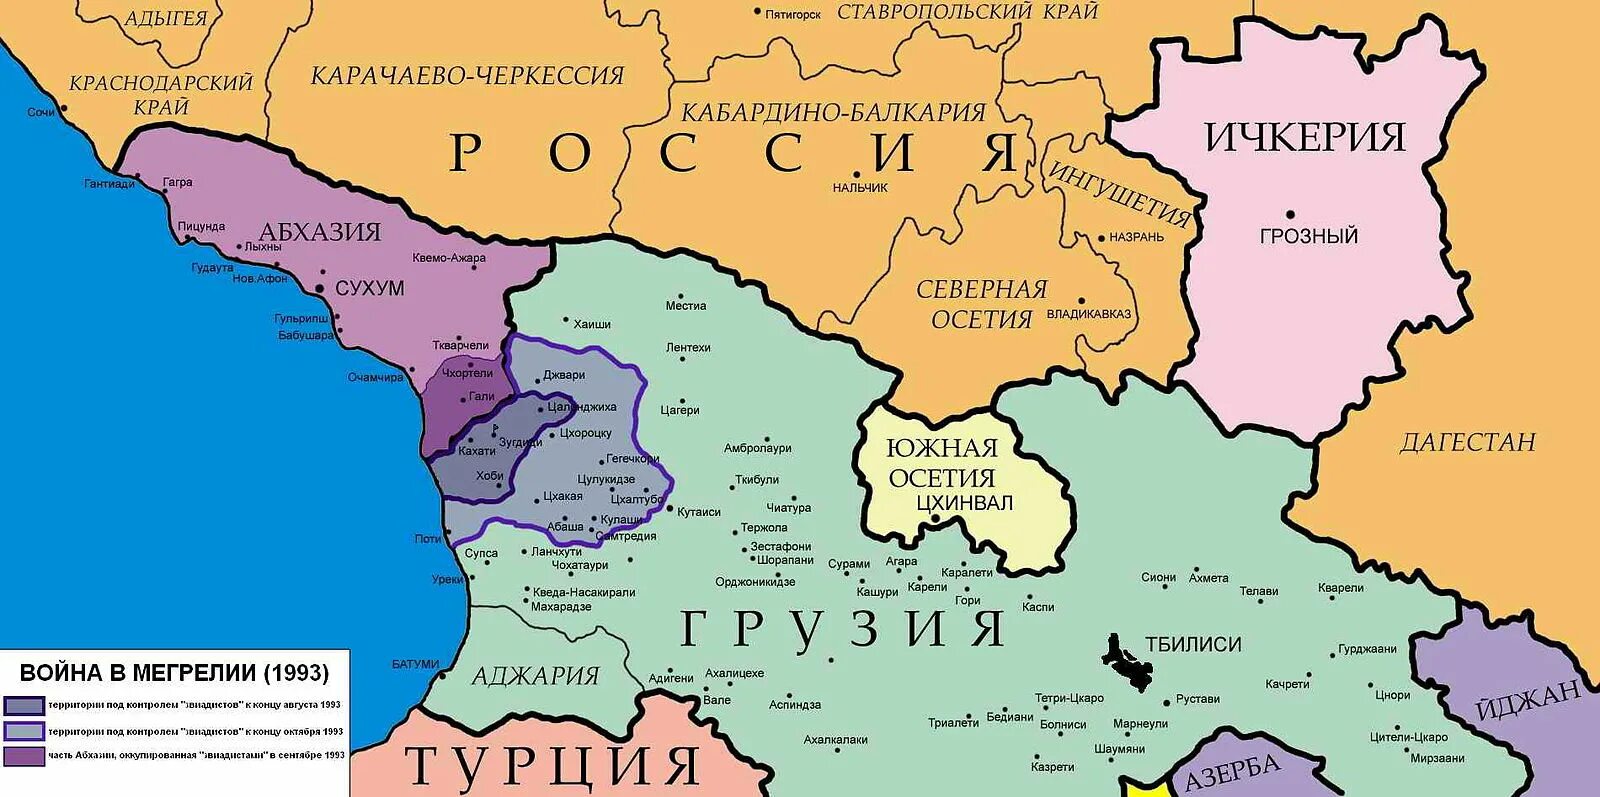 Территория Грузии в 1991. Карта Грузии 1991 года. Абхазия и Грузия на карте. Где проходит граница россии со странами абхазия